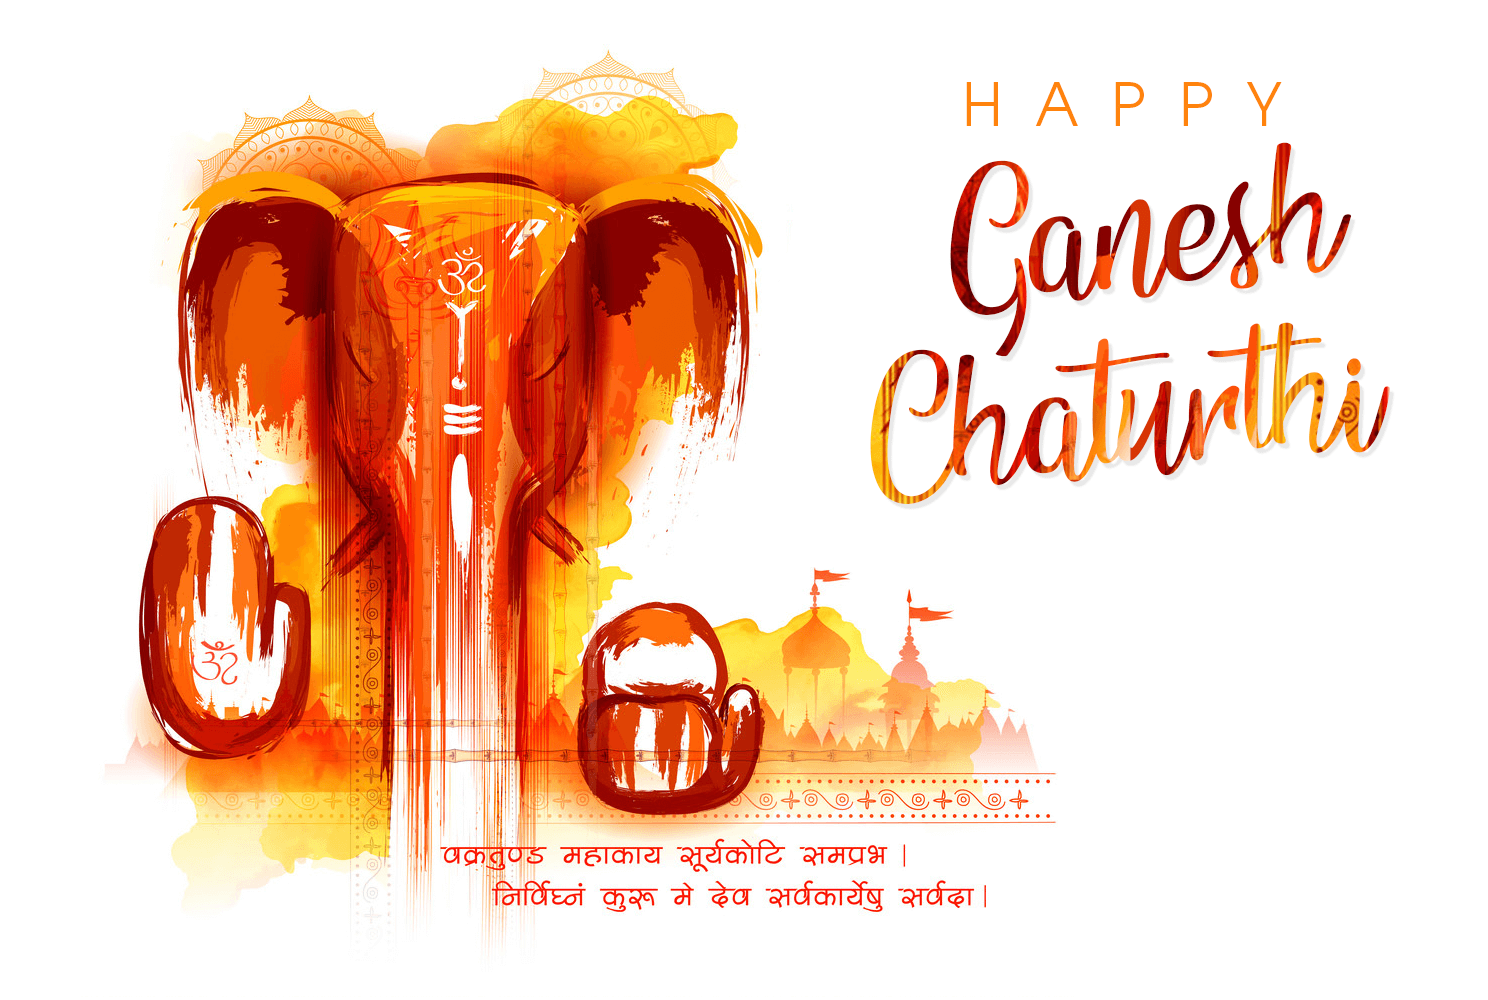 Ganesh Chaturthi 2019: Images, Wallpapers, WhatsApp Status & Wishes of  Vinayaka Chaturthi | CGfrog